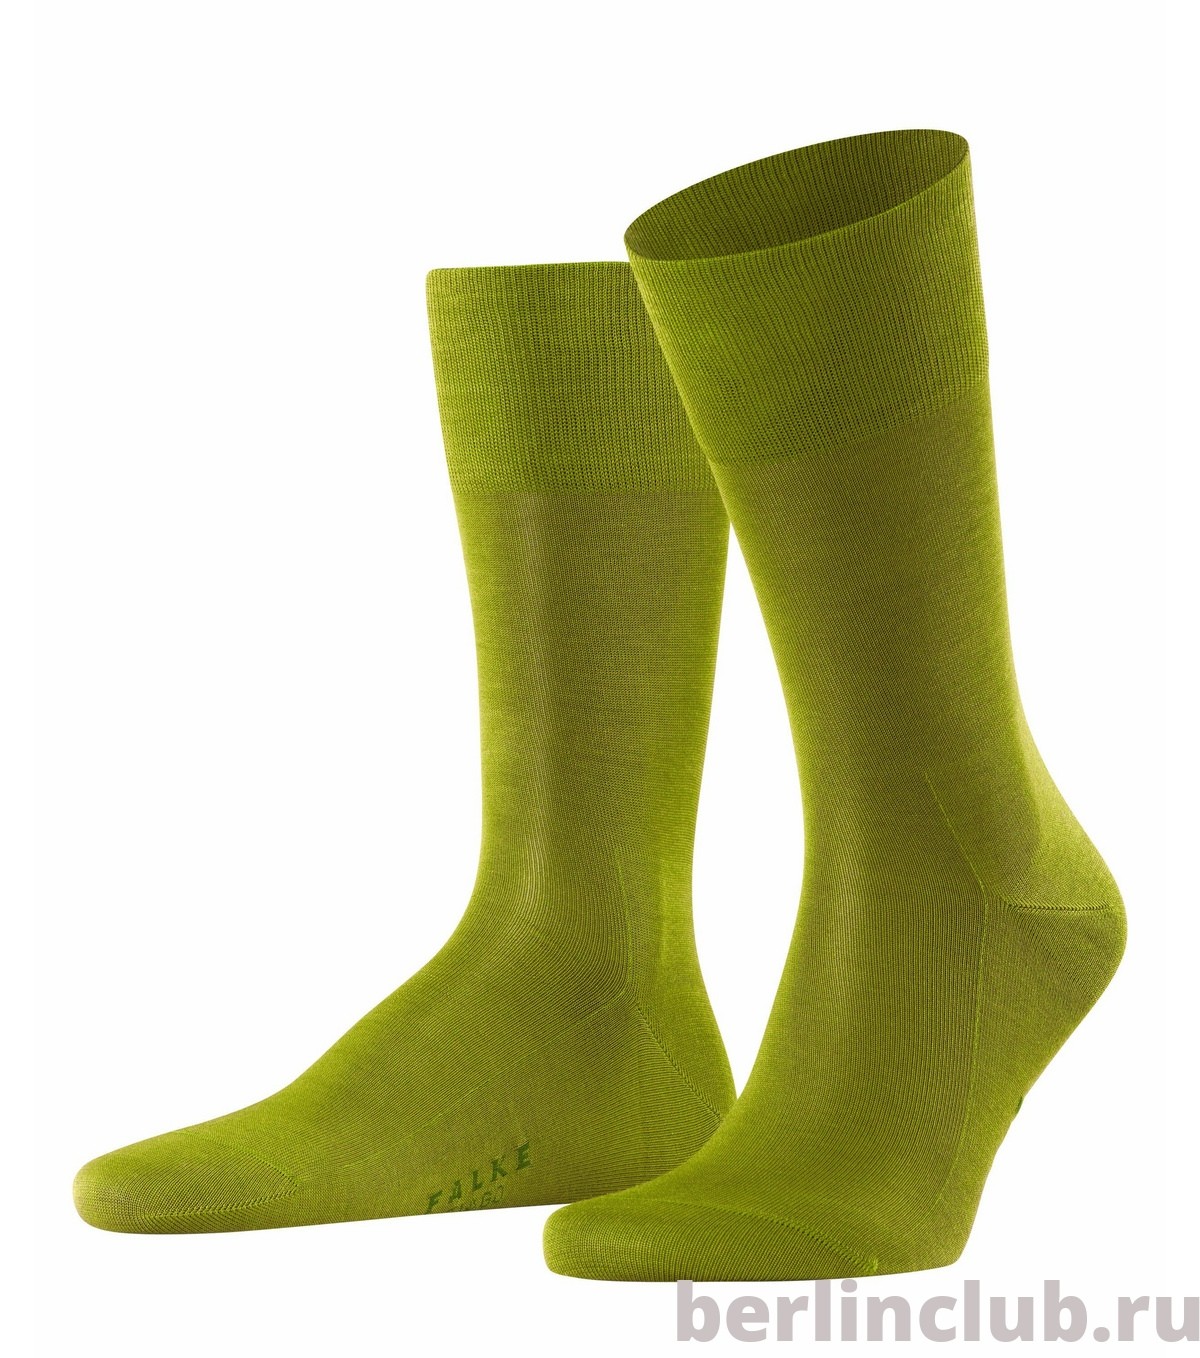 Хлопковые носки FALKE Tiago 14662 7168 - купить с доставкой по России, оплата при получении